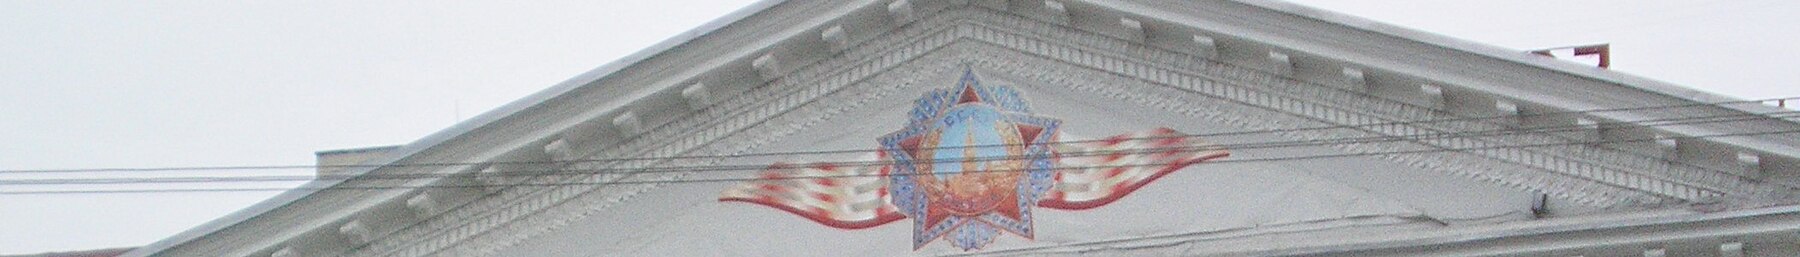 Hviderusland banner 1.jpg